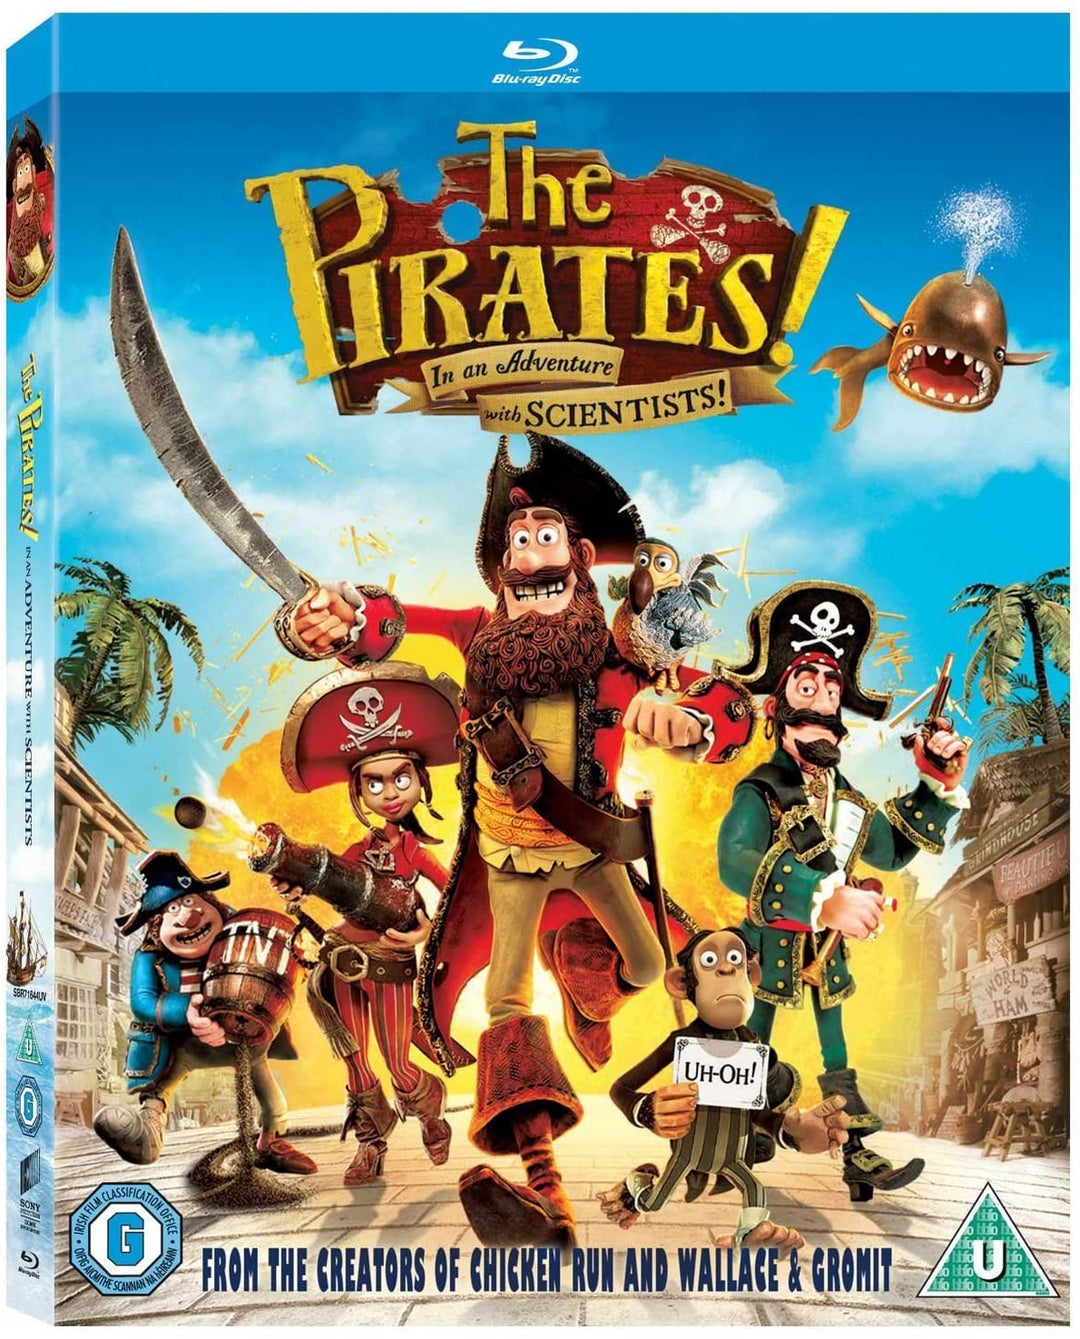 De piraten! In een avontuur met wetenschappers [Blu-ray] [Regiovrij]